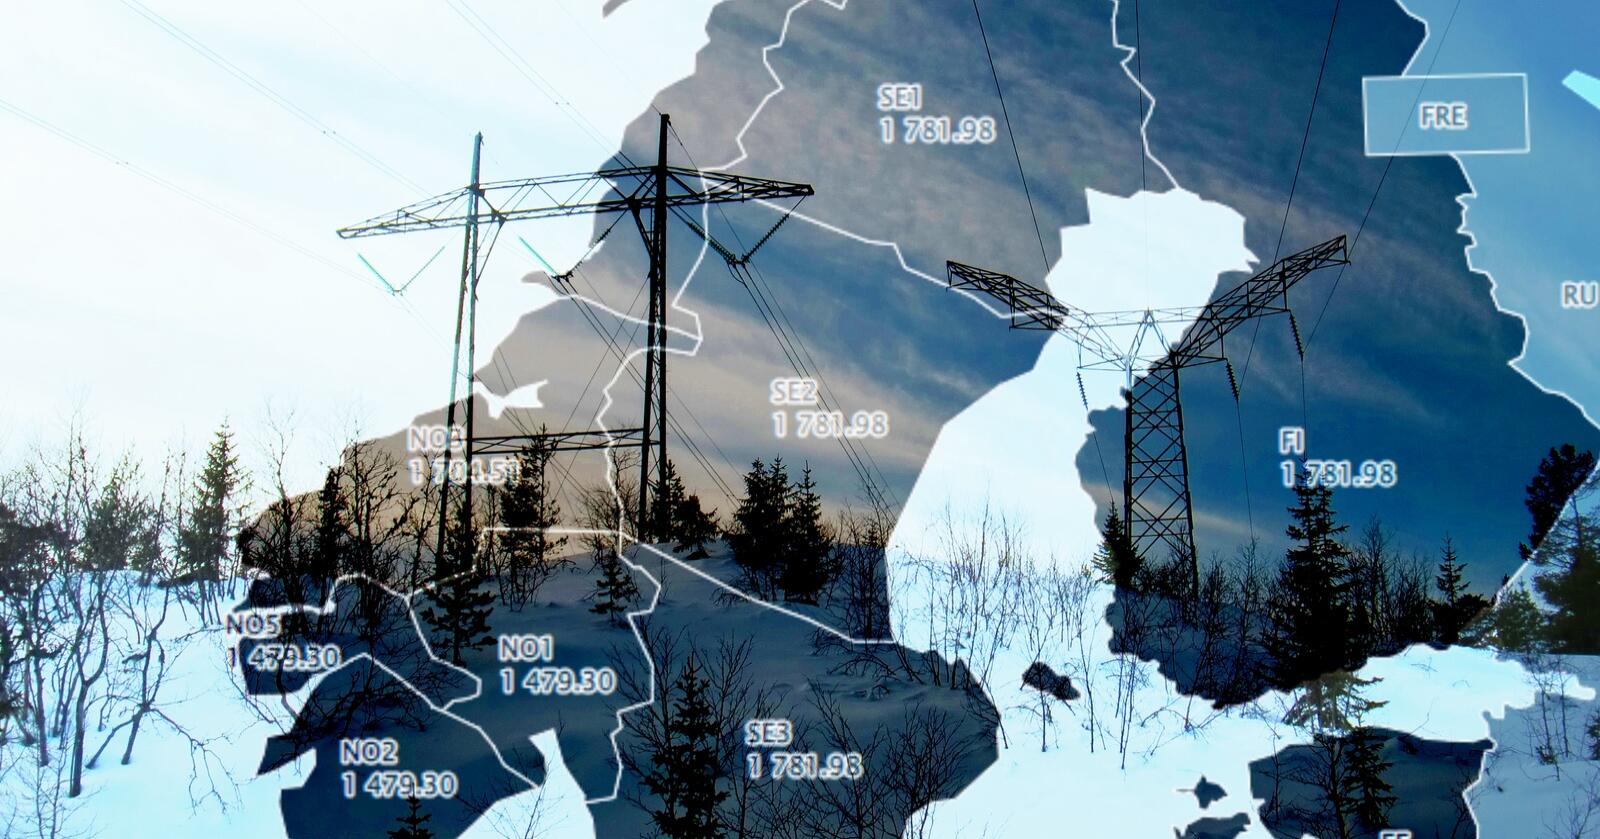 Etter at Statnett kuttet strømeksporten til Midt-Sverige denne uken, har pris-smitte, sammen med produksjonsforstyrrelser i Nord-Sverige, bidratt til at prisskillet mellom nord og sør i Norge er reversert. Nå er det dyrt med strøm i hele landet, men de høyeste prisene finner du nord for Dovrefjell. Illustrasjon: Eskild Johansen/Mariann Tvete